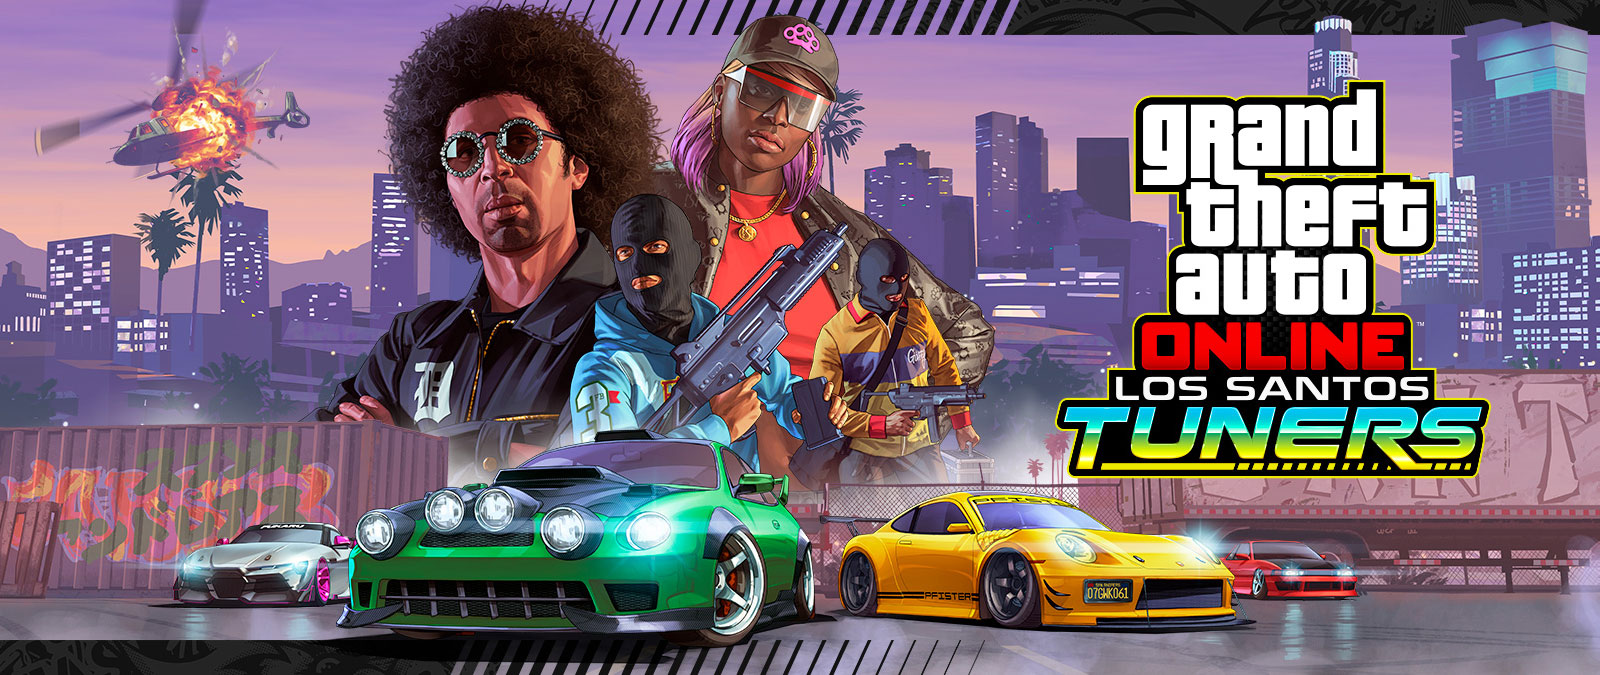 Grand Theft Auto Online, Los Santos Tuners. Altlarında dört süper araba olan dört karakter bir şehir silüetinin önünde poz veriyor 